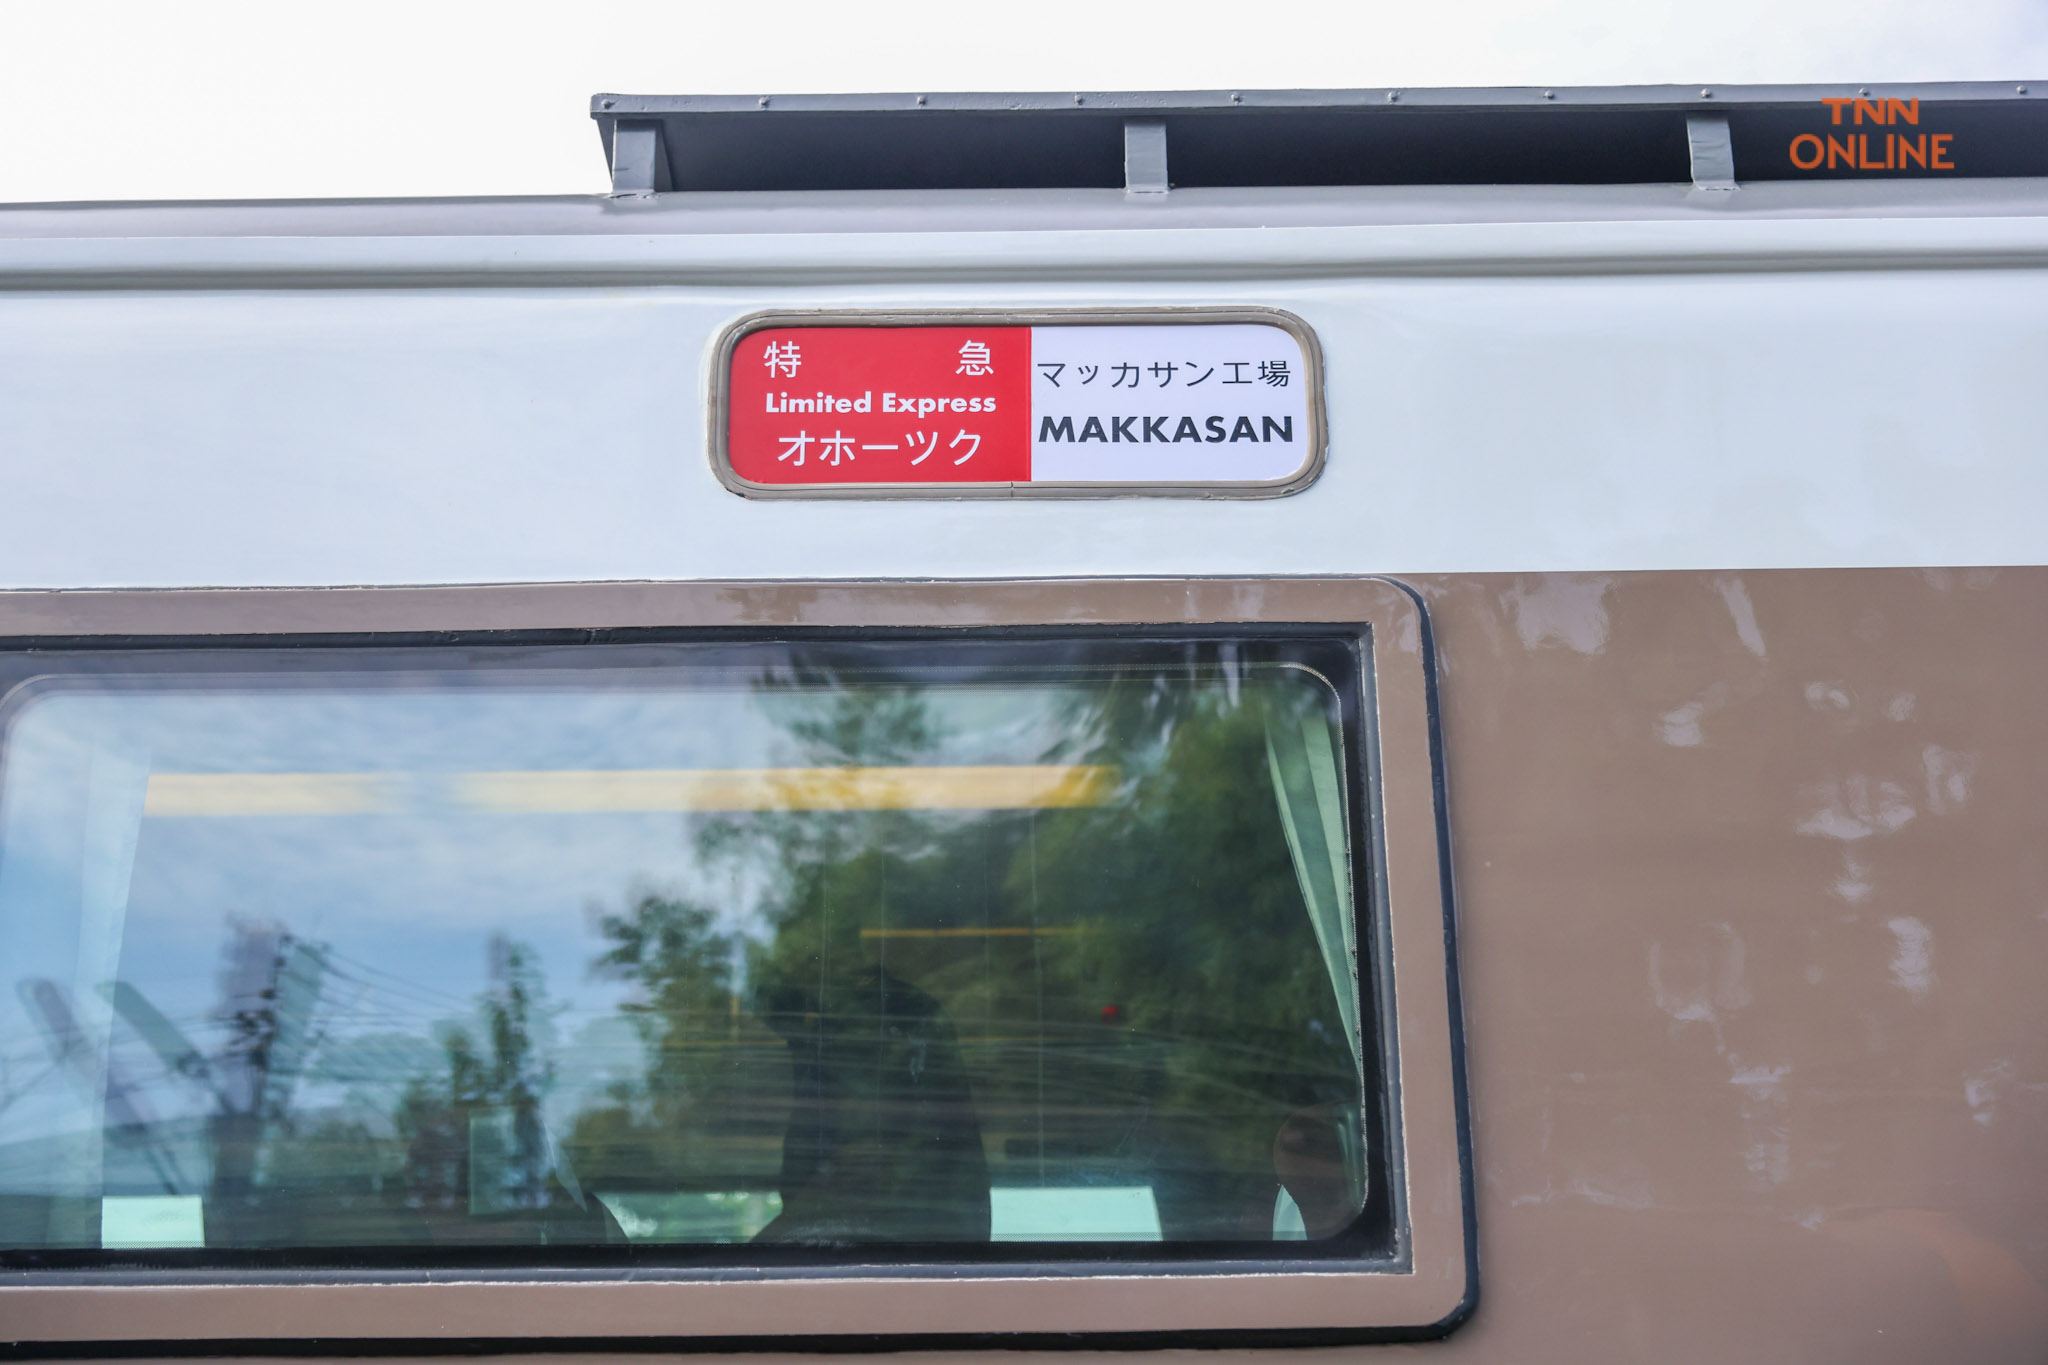 รถไฟมือสองญี่ปุ่น“KIHA 183” ทดสอบระบบเส้นทาง กทม.- ฉะเชิงเทรา ก่อนเปิดให้บริการประชาชนปลายปีนี้